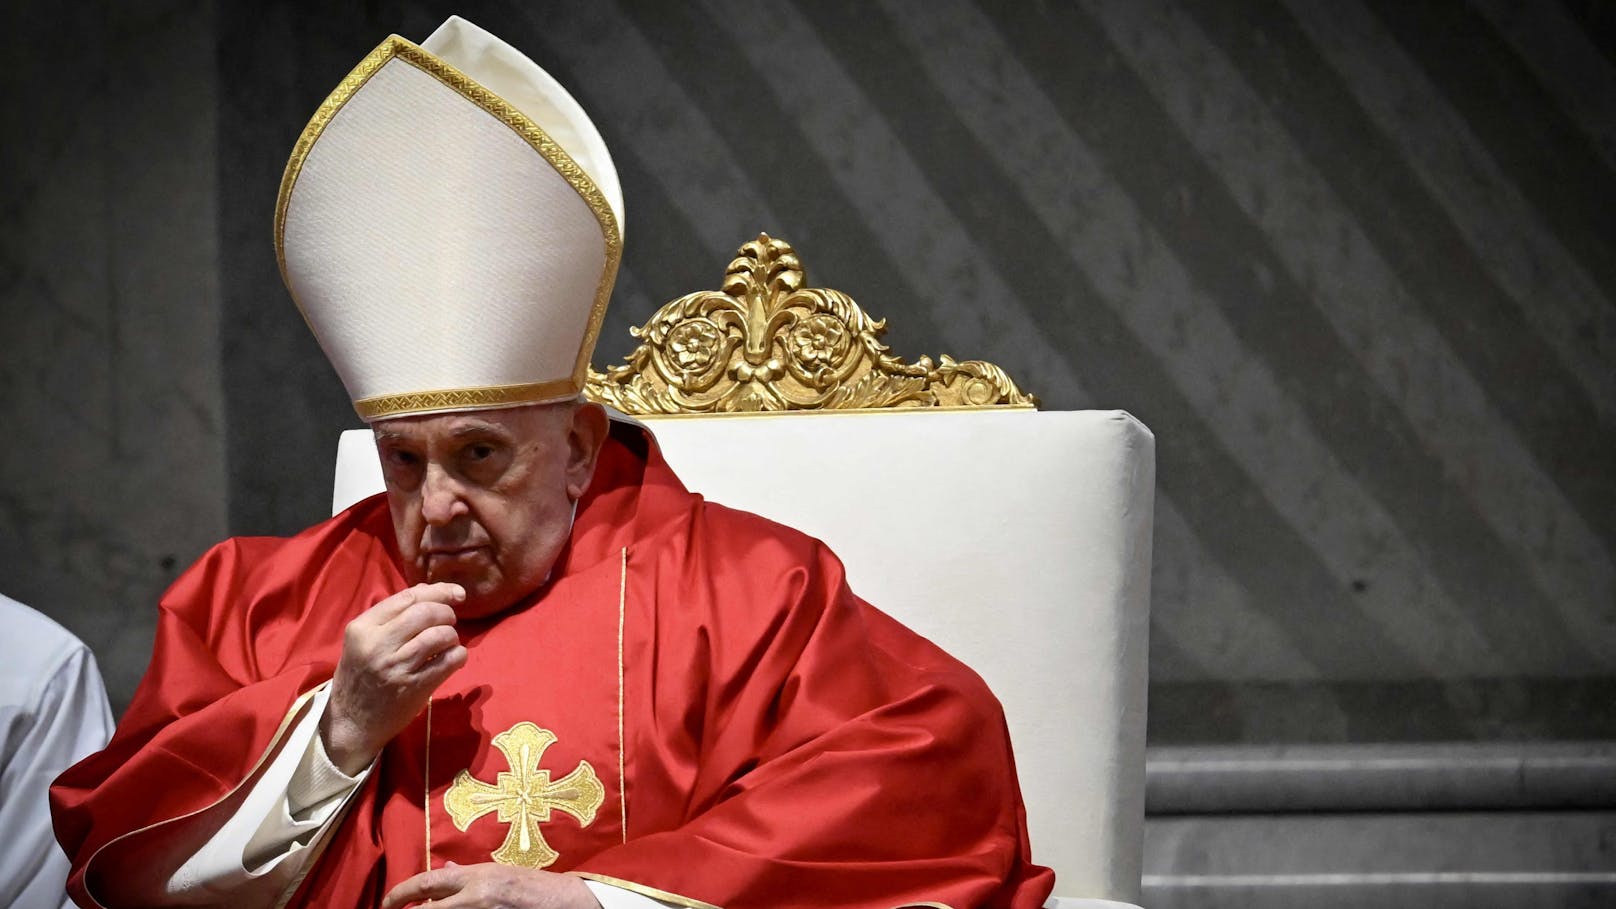 Kreuzweg abgesagt: Sorge um angeschlagenen Papst